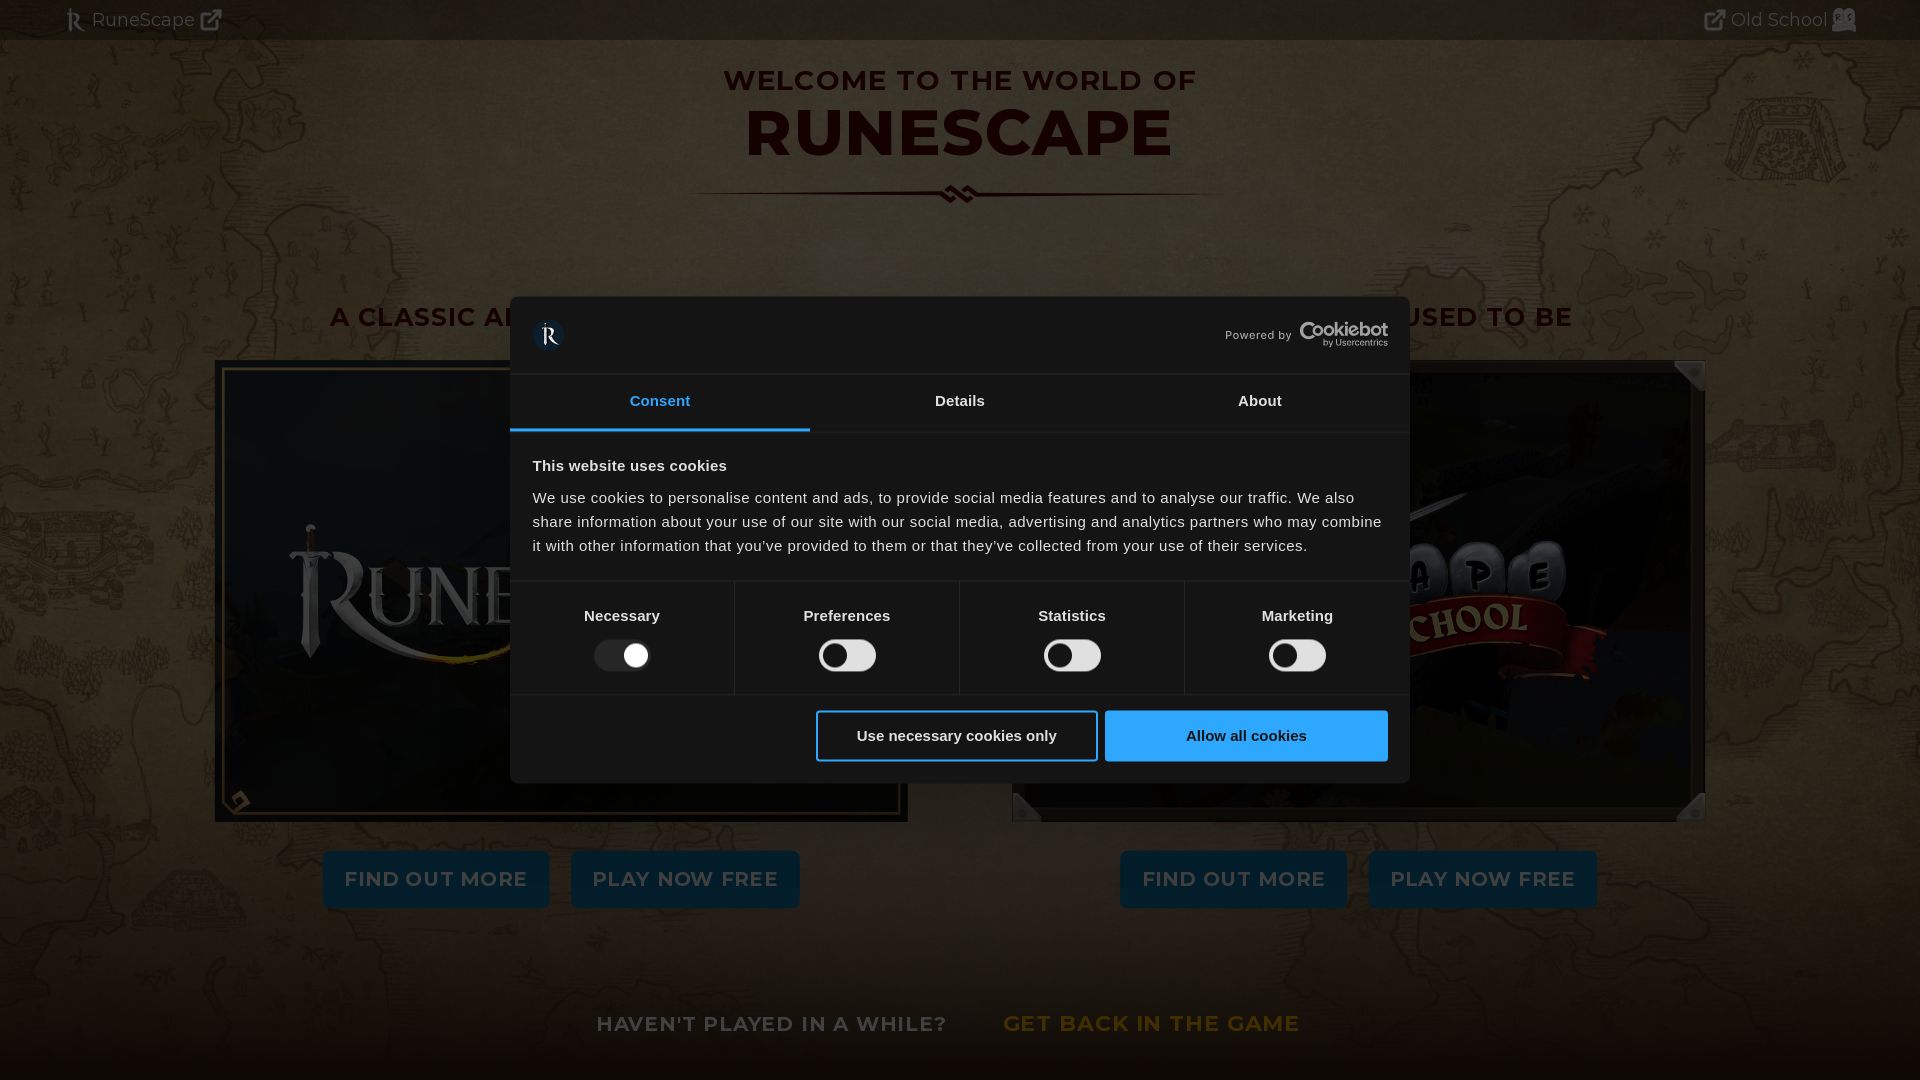 État du site web runescape.com est   EN LIGNE